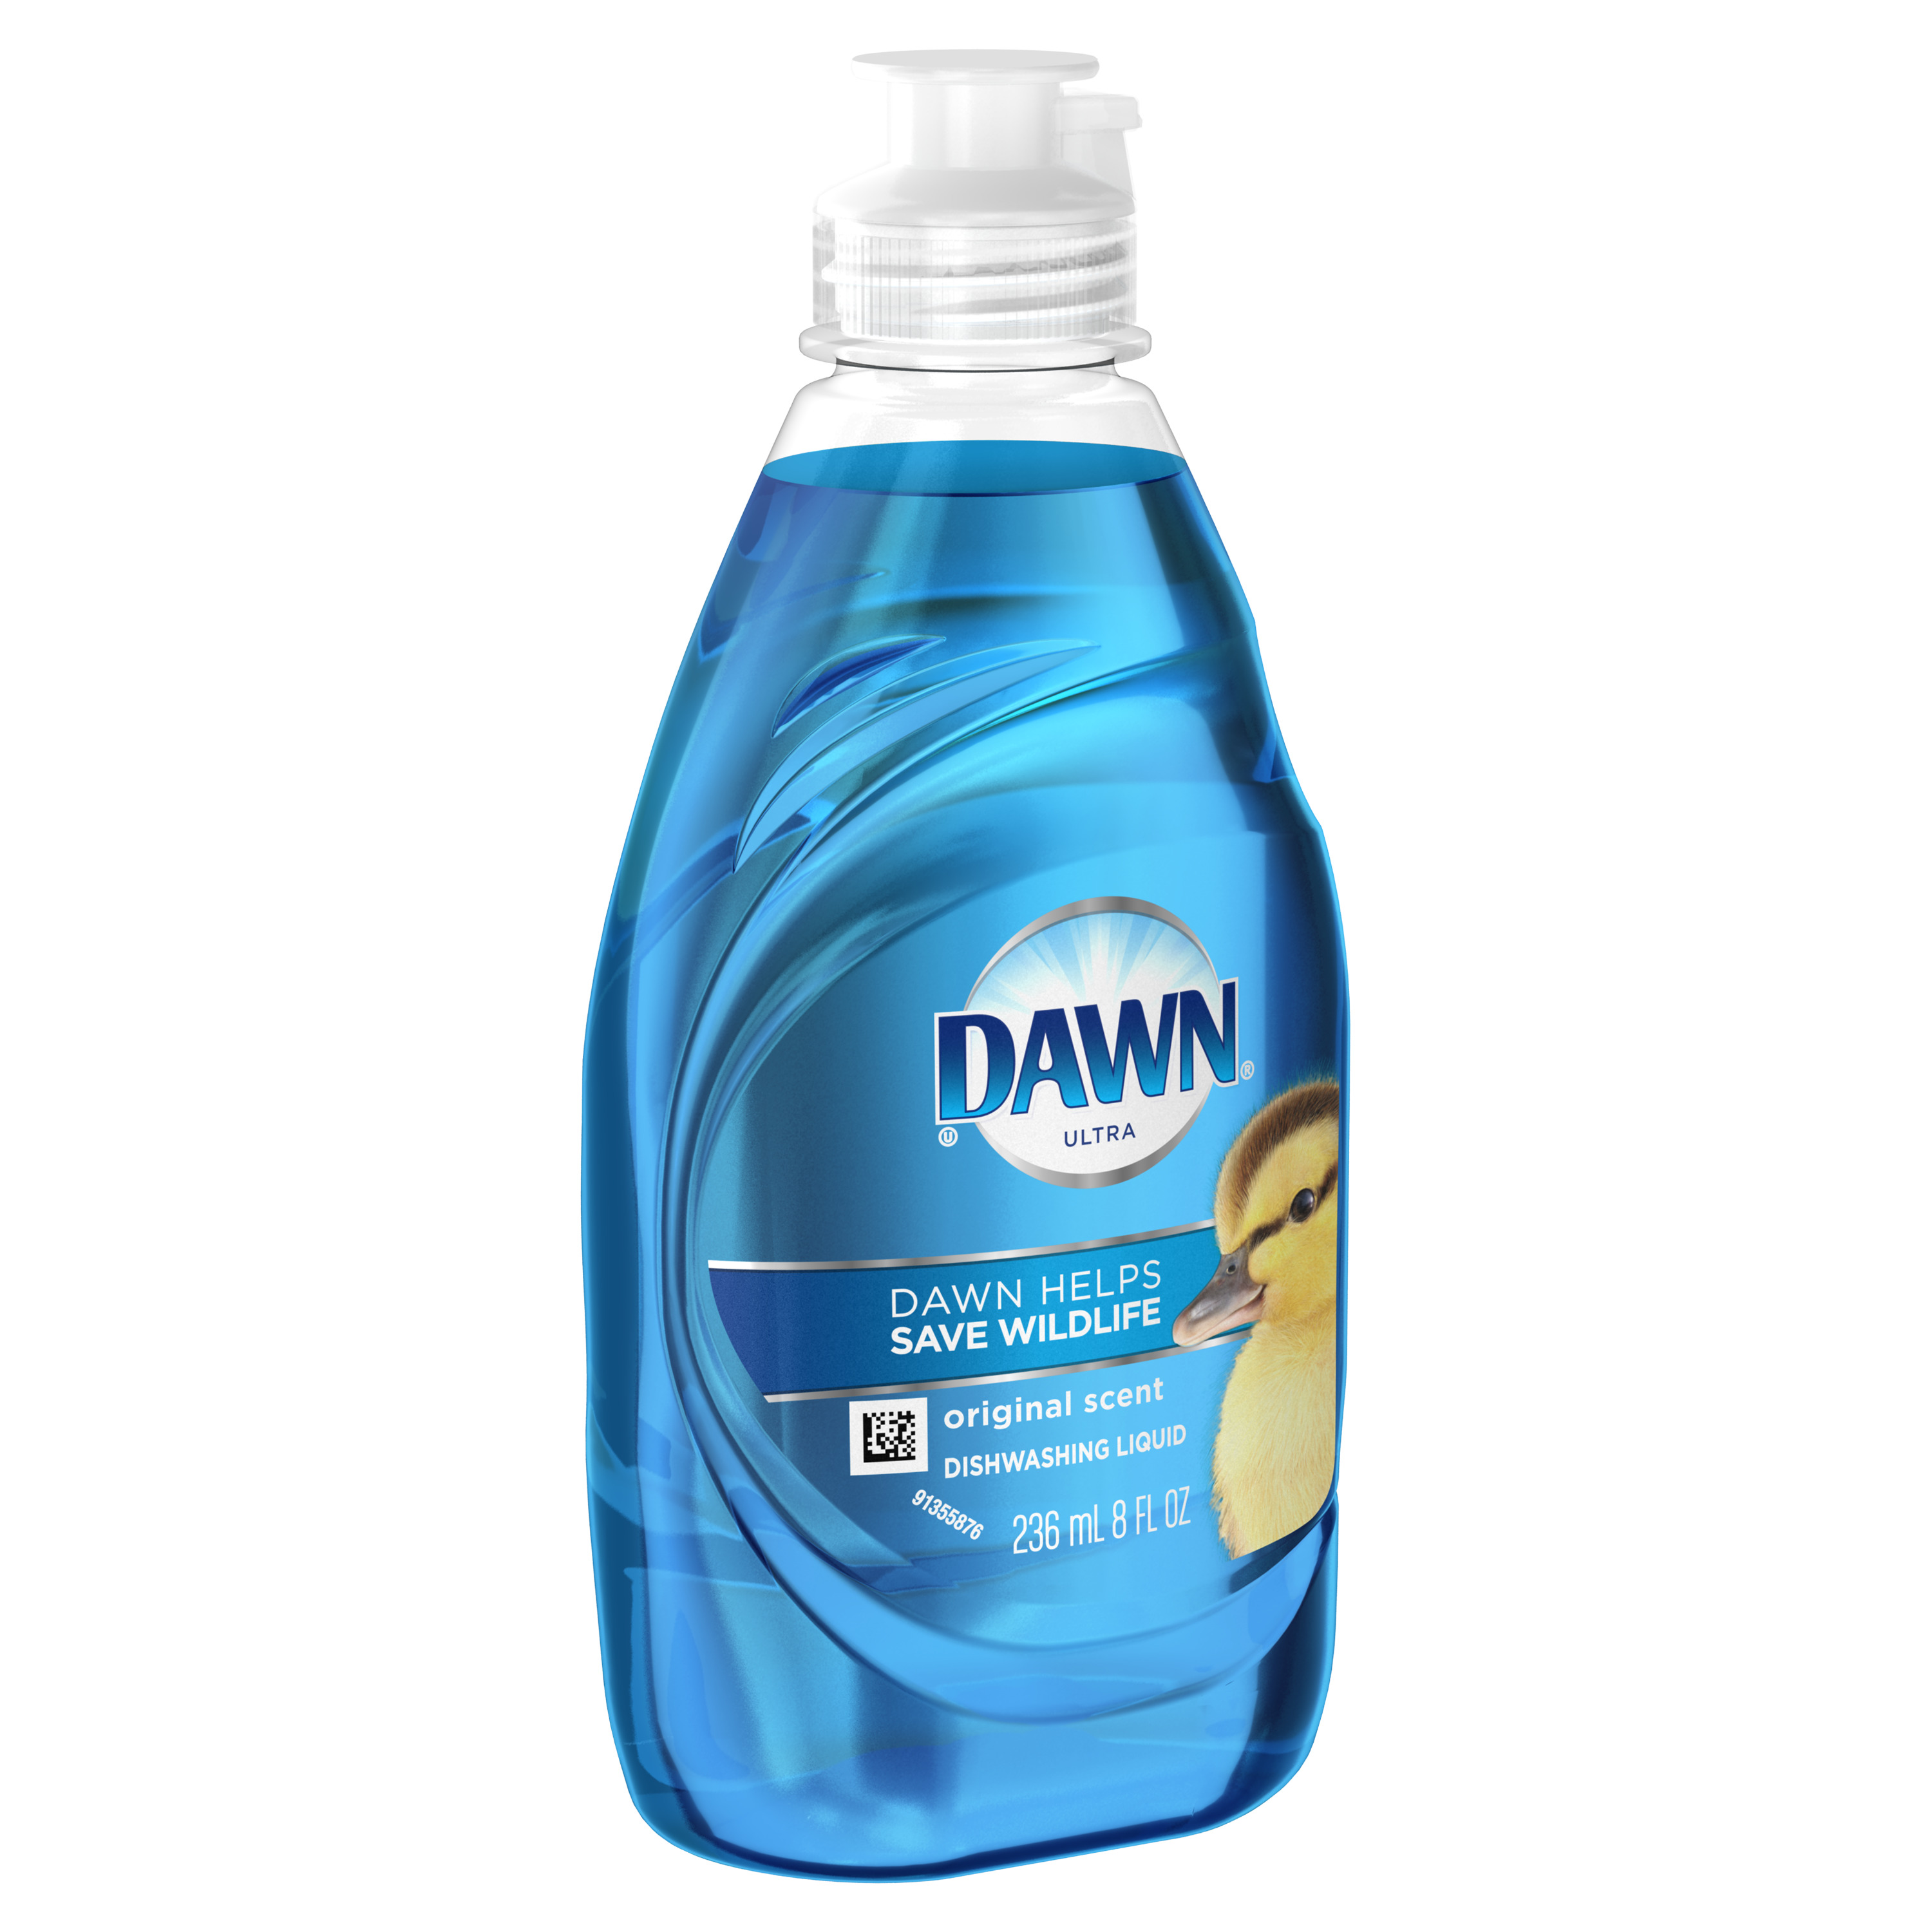 Dawn Ultra Dishwashing Liquid Dish Soap, Original, 8 fl oz - image 3 of 6